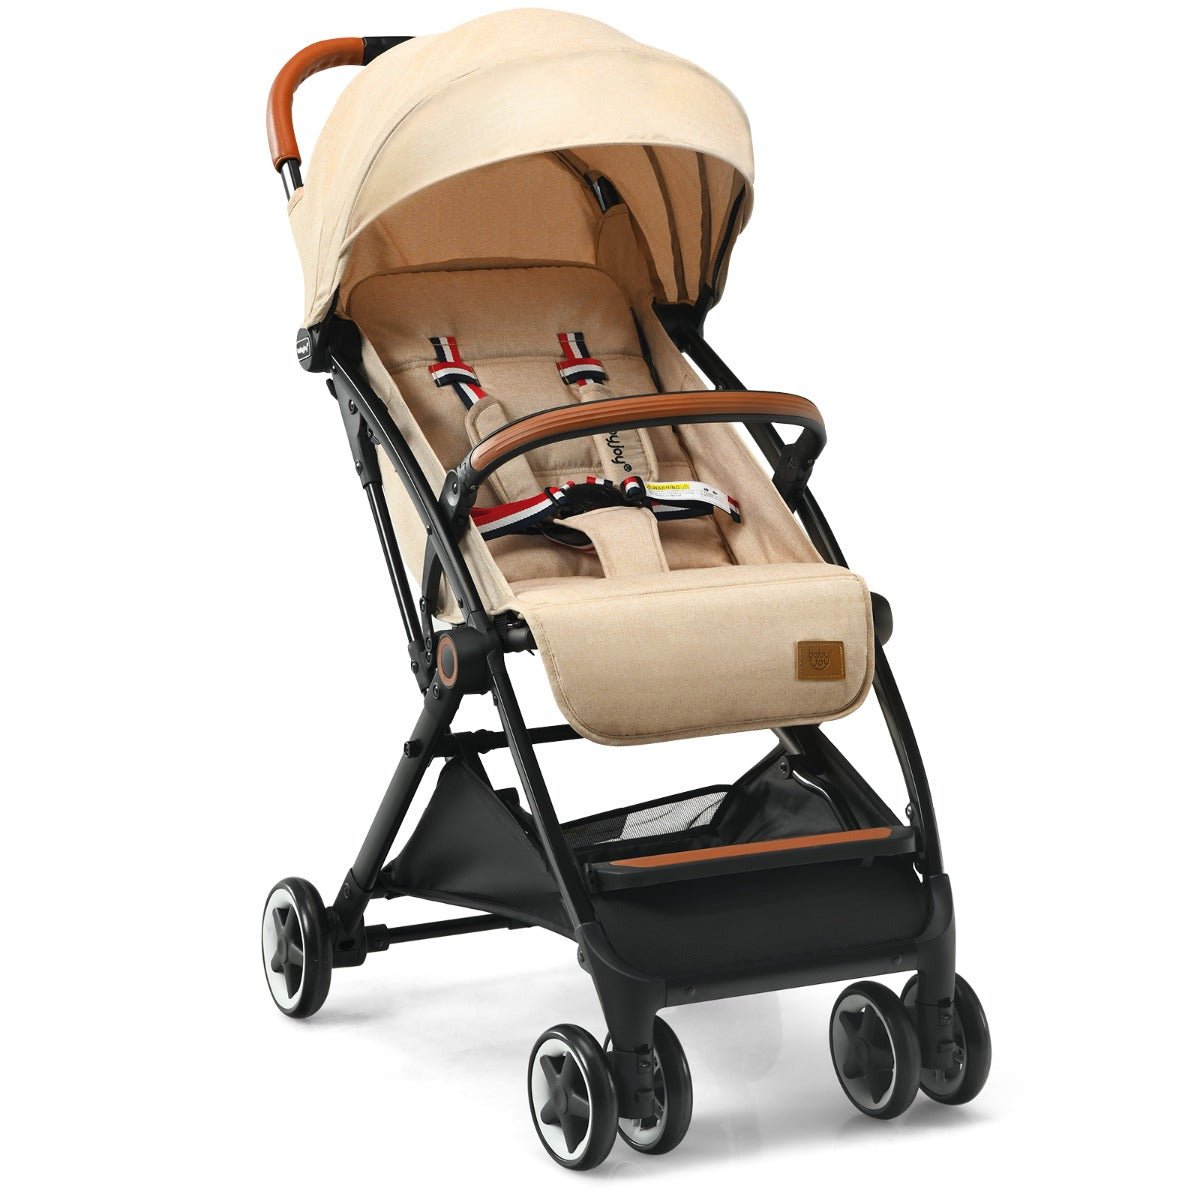 Beige Adjustable Backrest Canopy Stroller for Babies